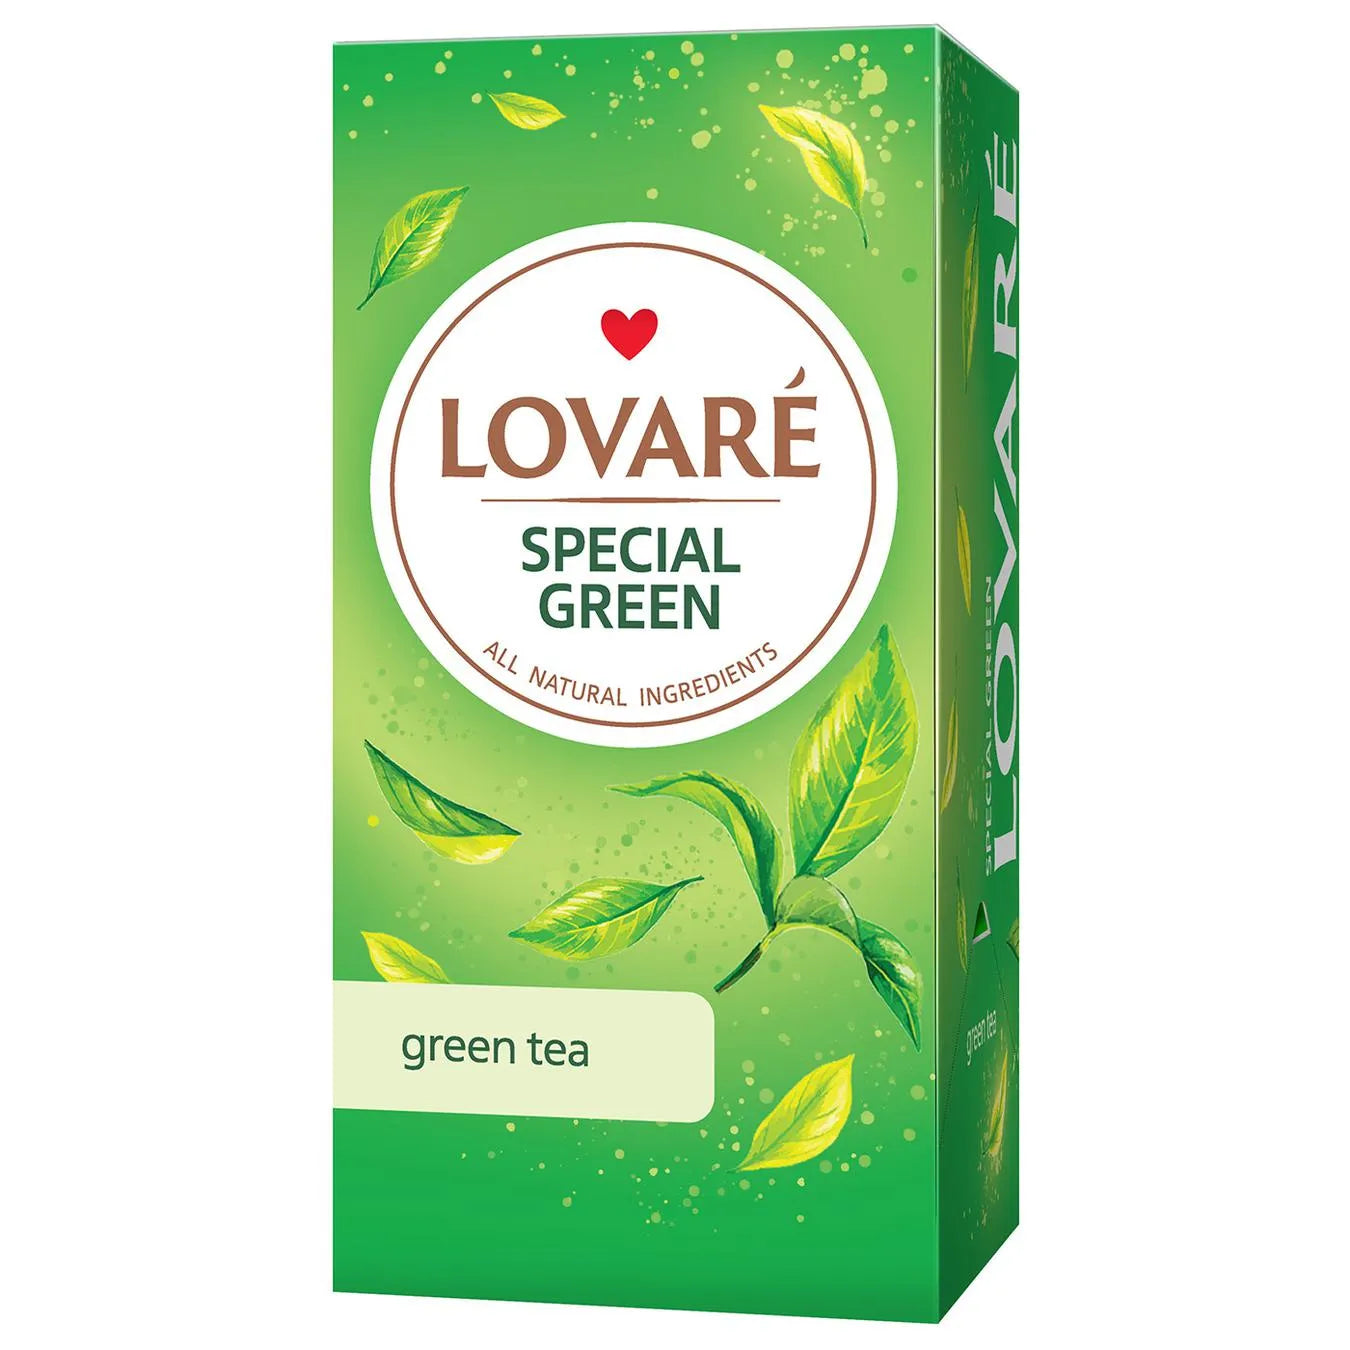 Lovare Special Green Tea, 36g